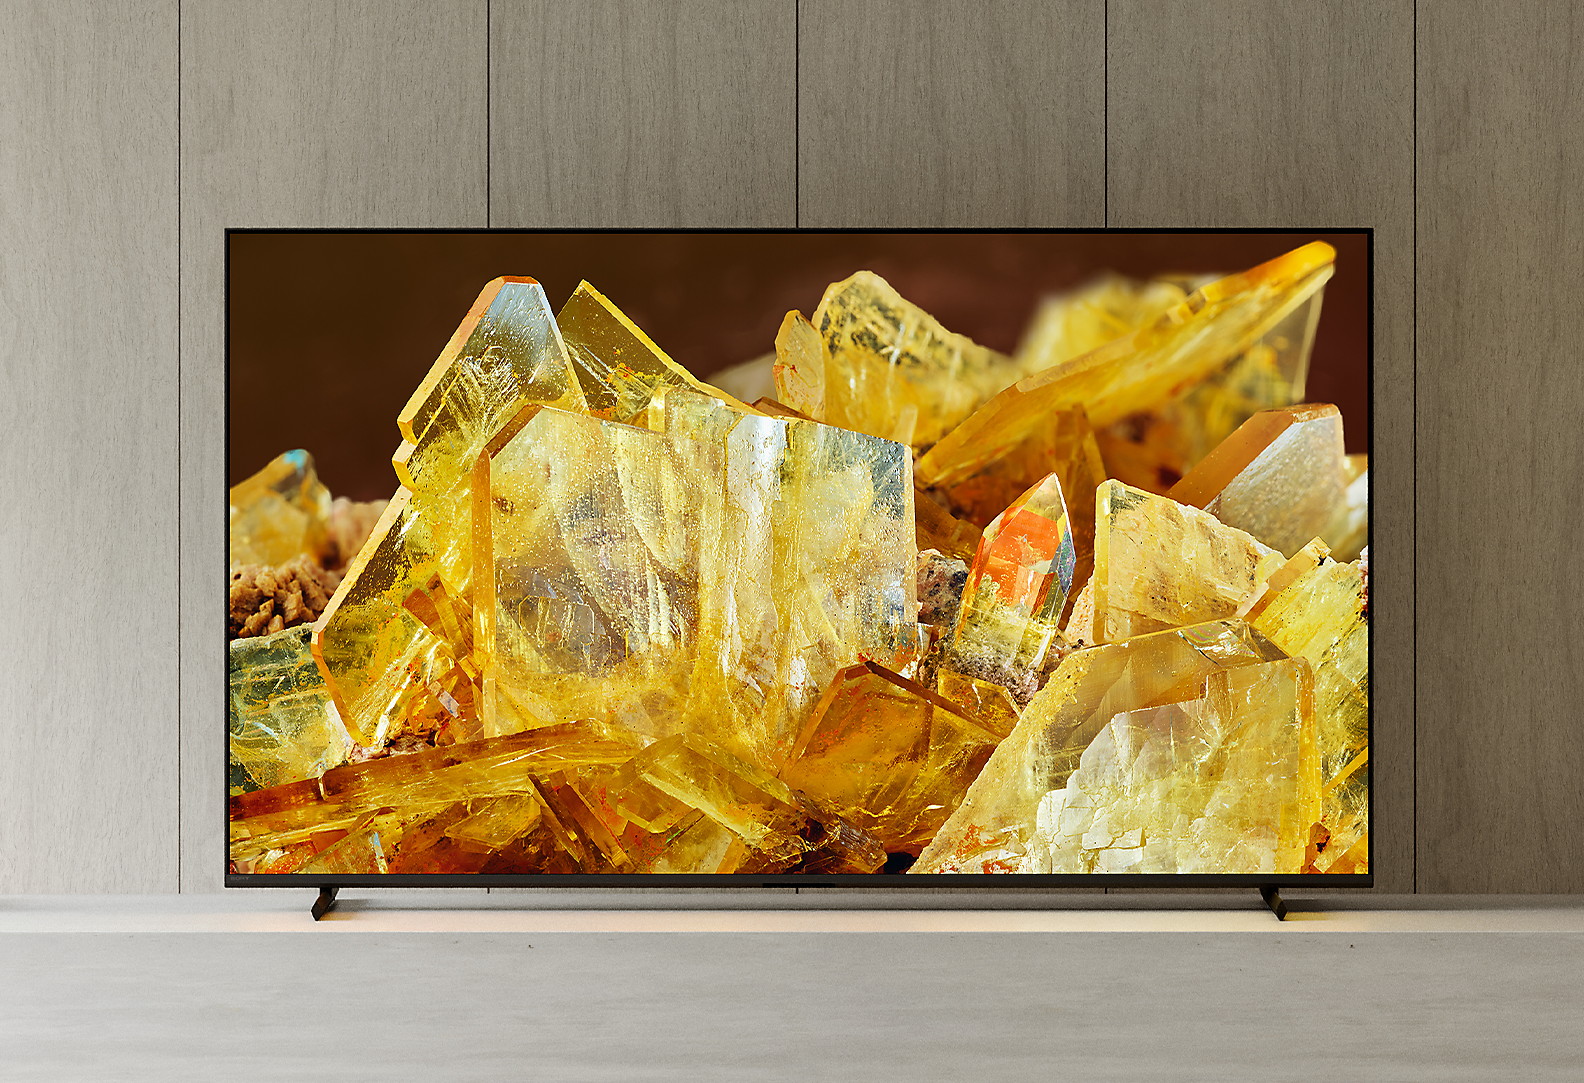 Televizor BRAVIA XR v dnevni sobi s prikazom približane slike oranžno obarvanih kristalov